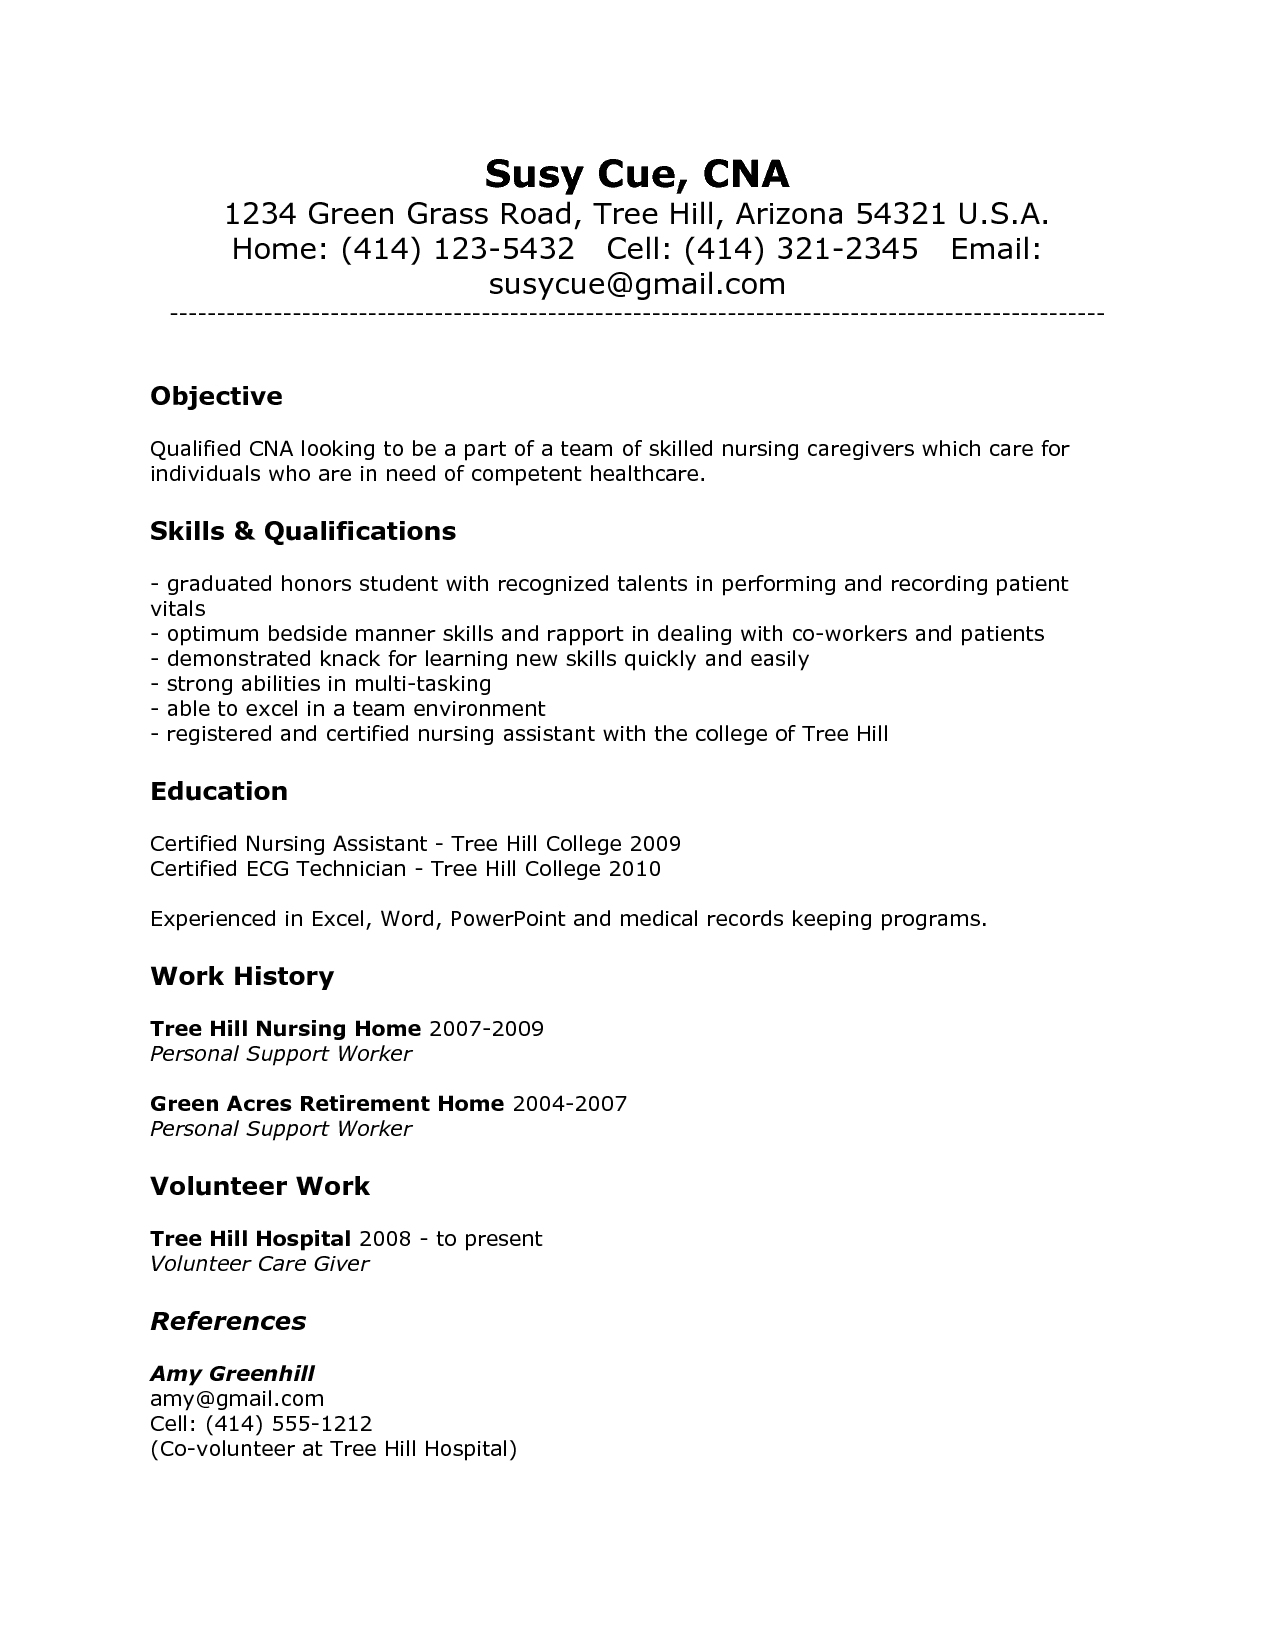 Nursing Assistant Resume Objective For Nursing Assistant Resume Resume Objective For Nursing